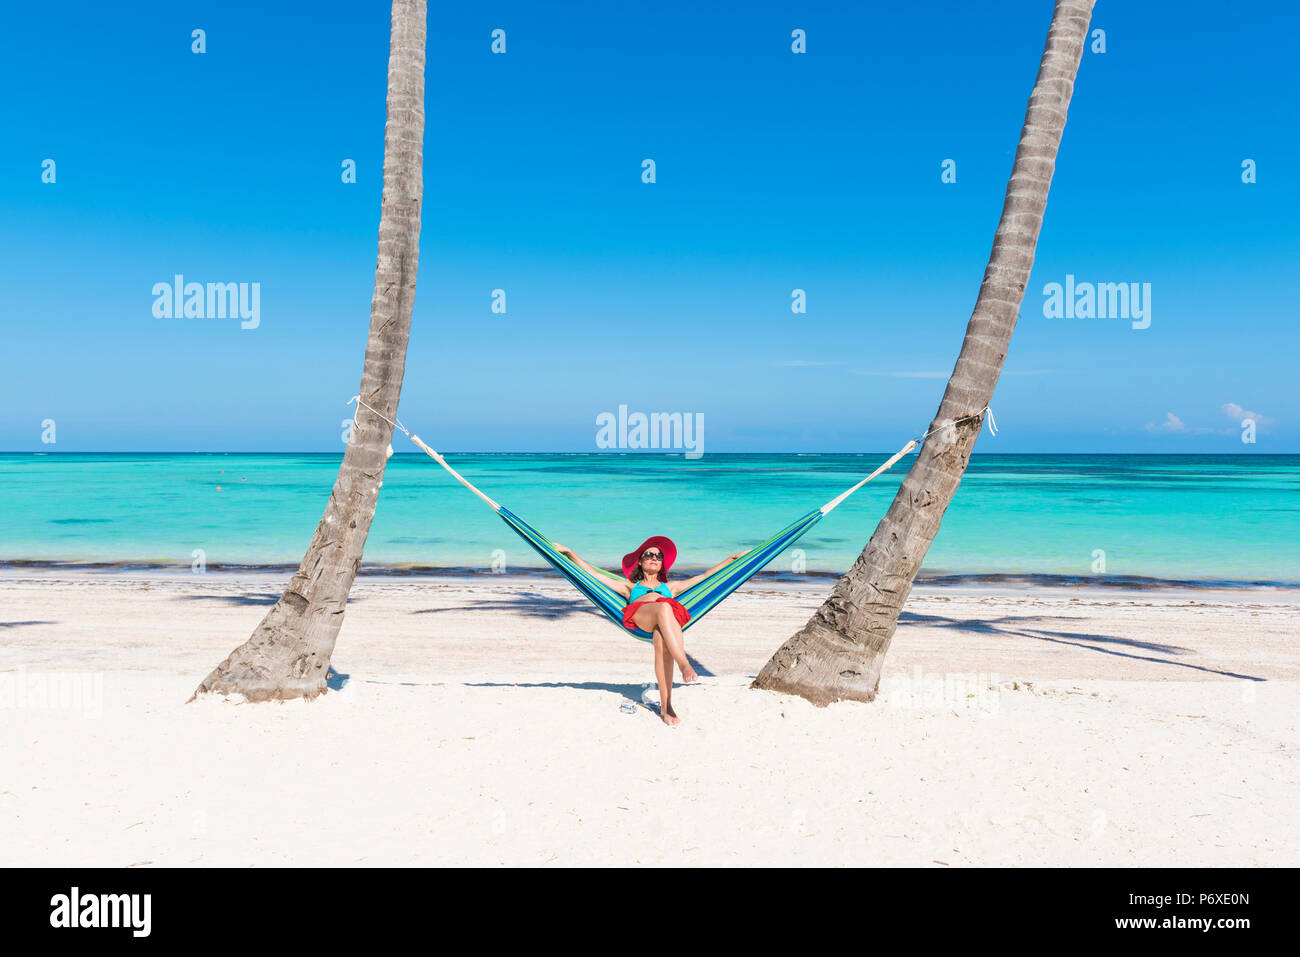 Spiaggia Juanillo (playa Juanillo), Punta Cana, Repubblica Dominicana. Donna relax su una amaca sulla spiaggia (MR). Foto Stock